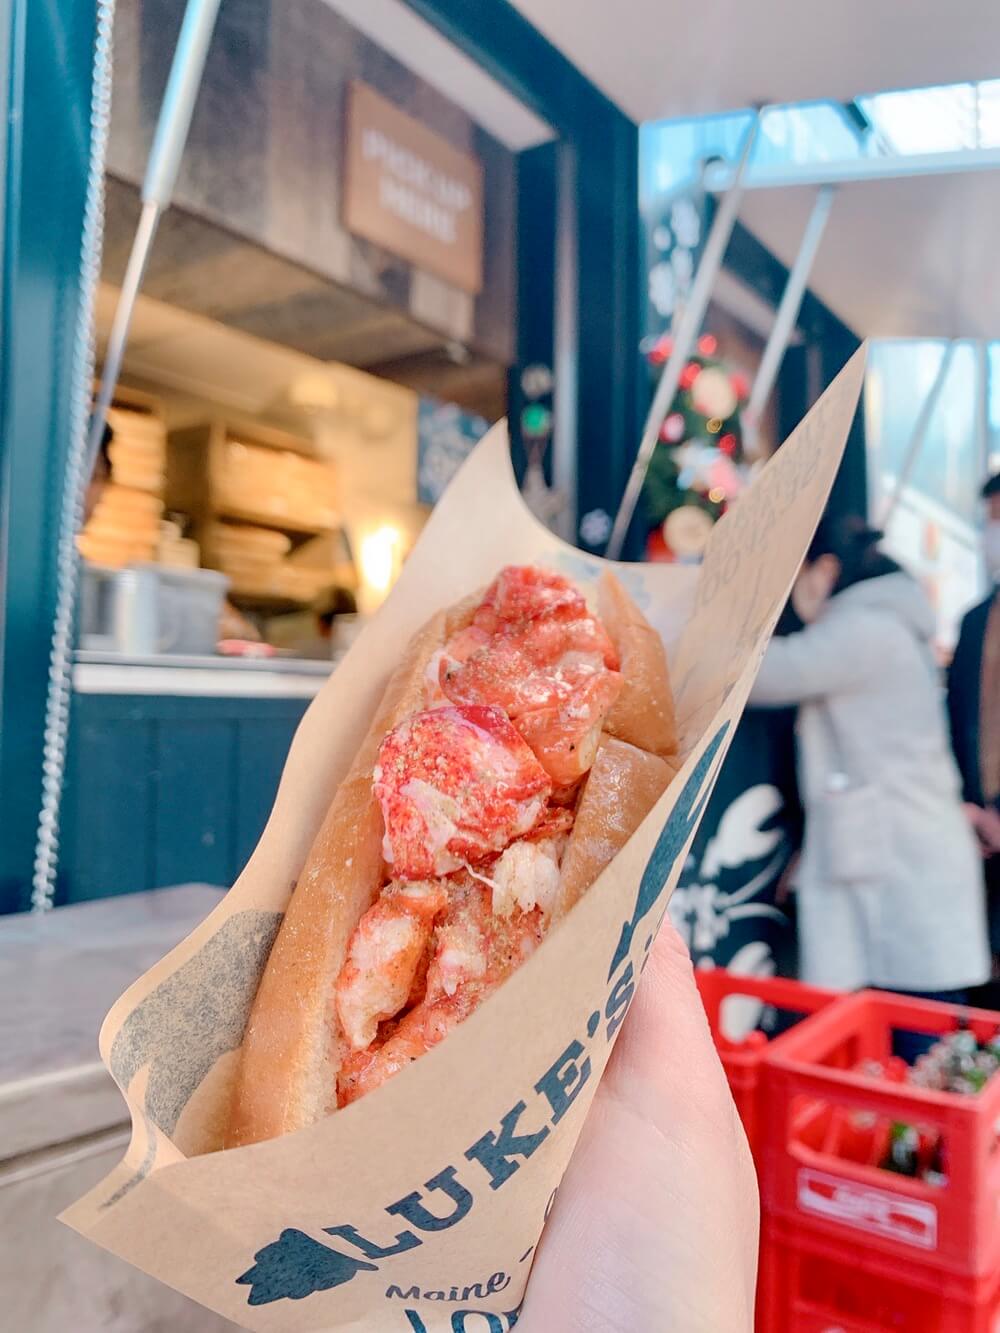 Luke’s lobster ในโตเกียว : ล็อบสเตอร์ทะลักๆ หวาน เนื้อแน่นๆ ในราคาแค่พันเยน!